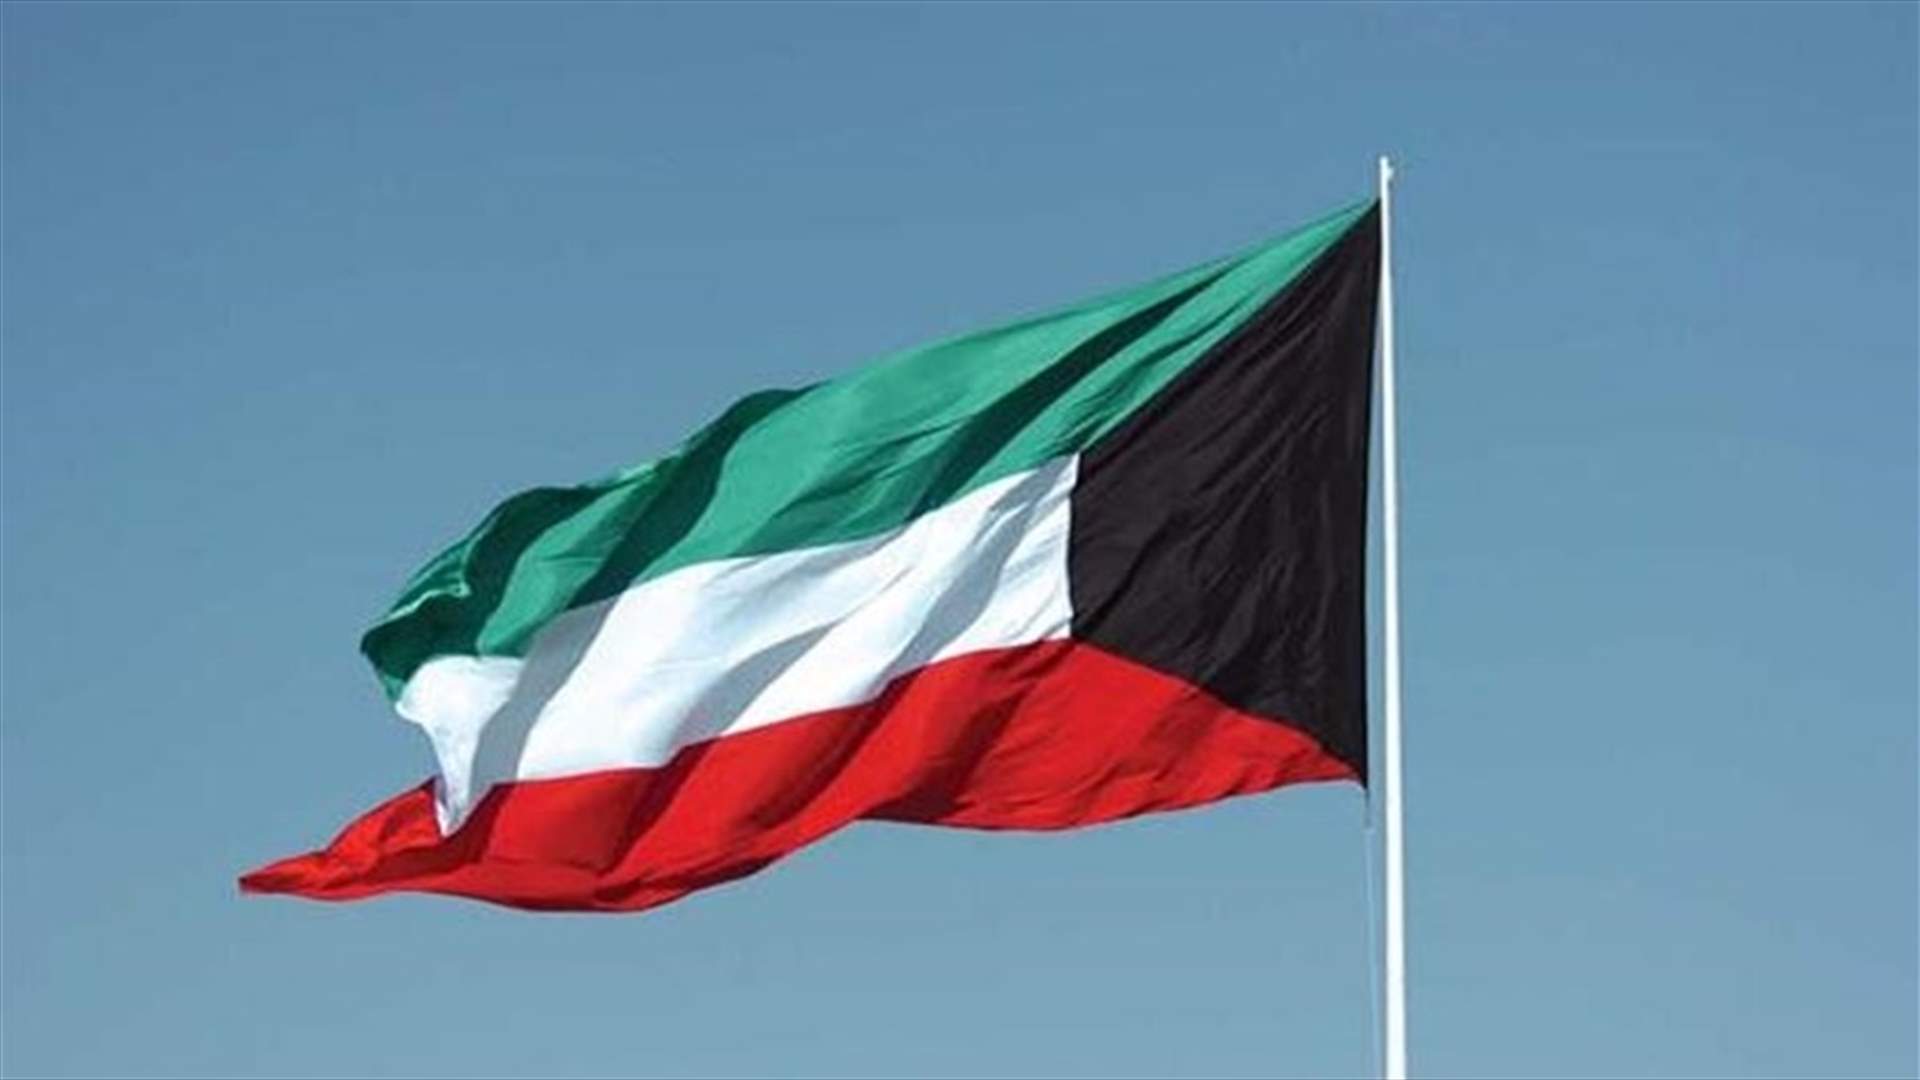 رئيس الوزراء الكويتي يعتذر عن قبول إعادة تعيينه رئيسا للحكومة